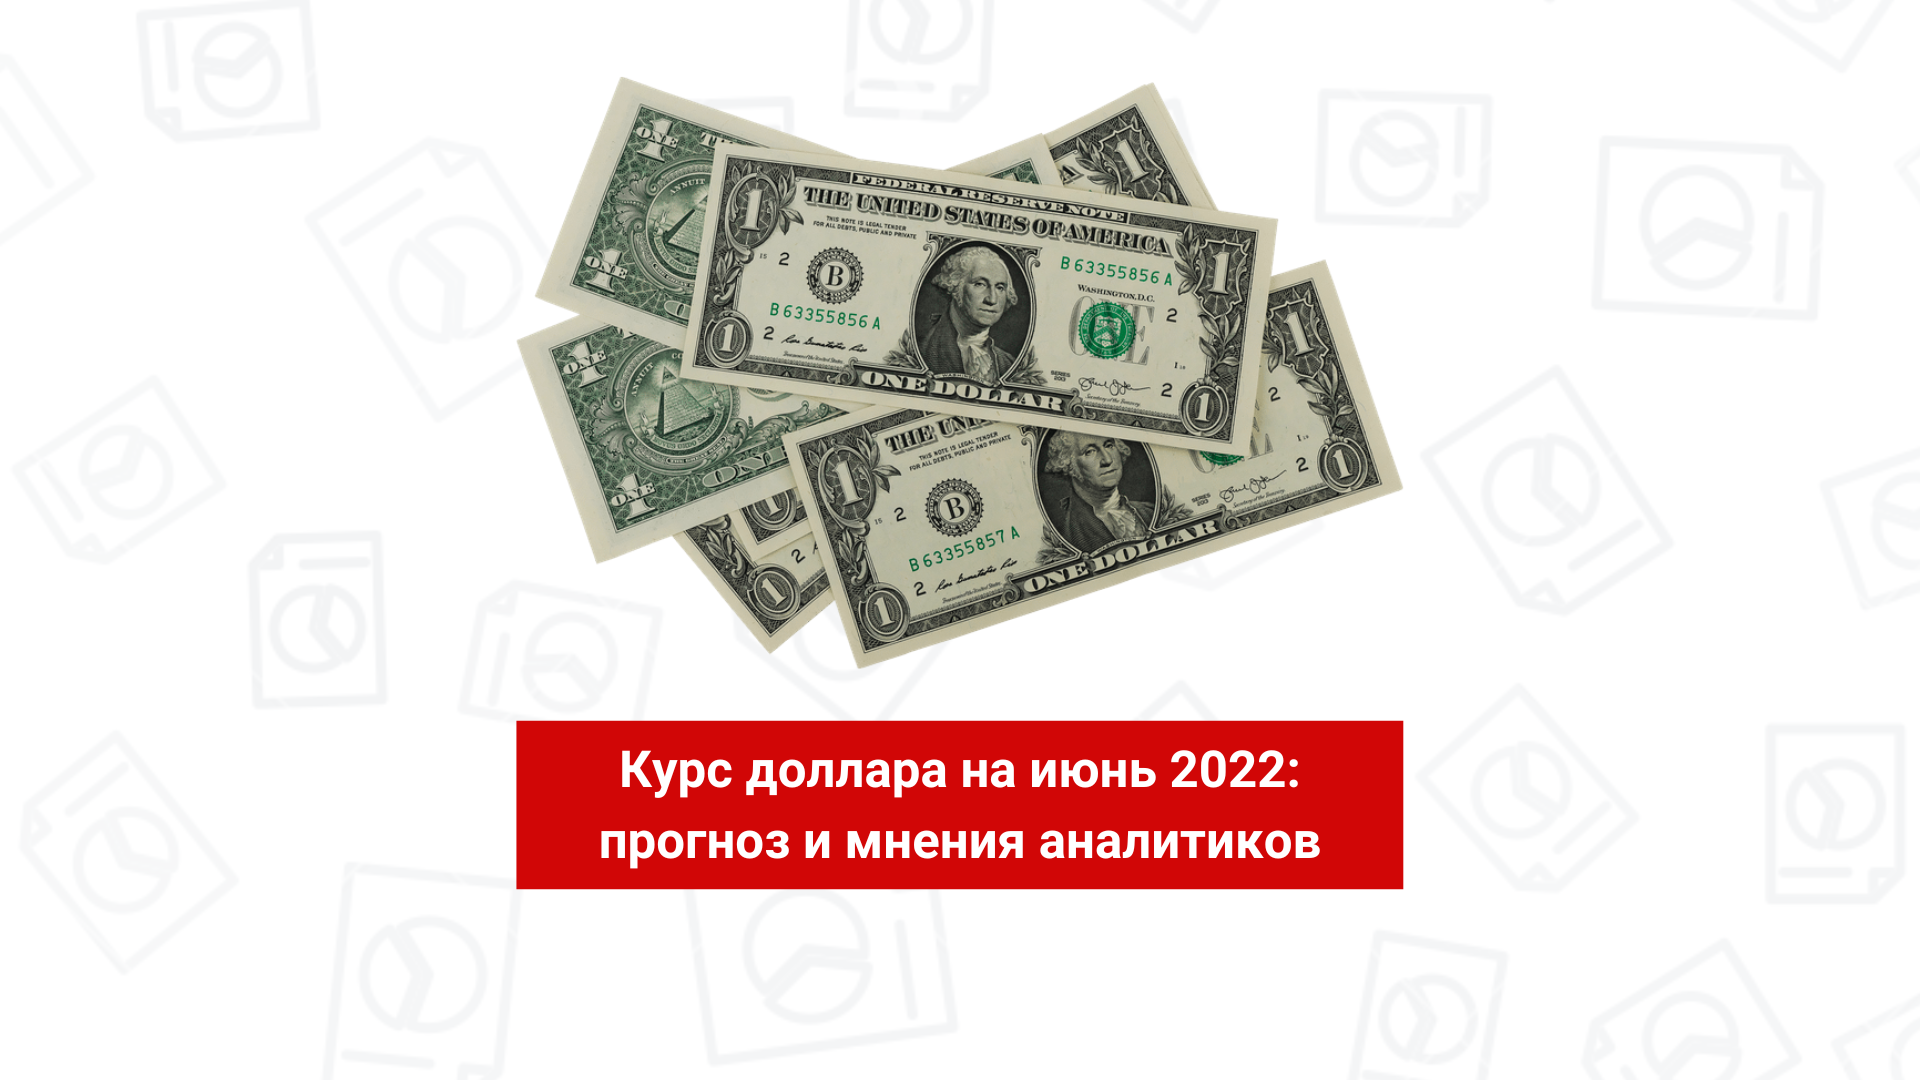 Курс доллара на июнь 2022: прогноз и мнения аналитиков